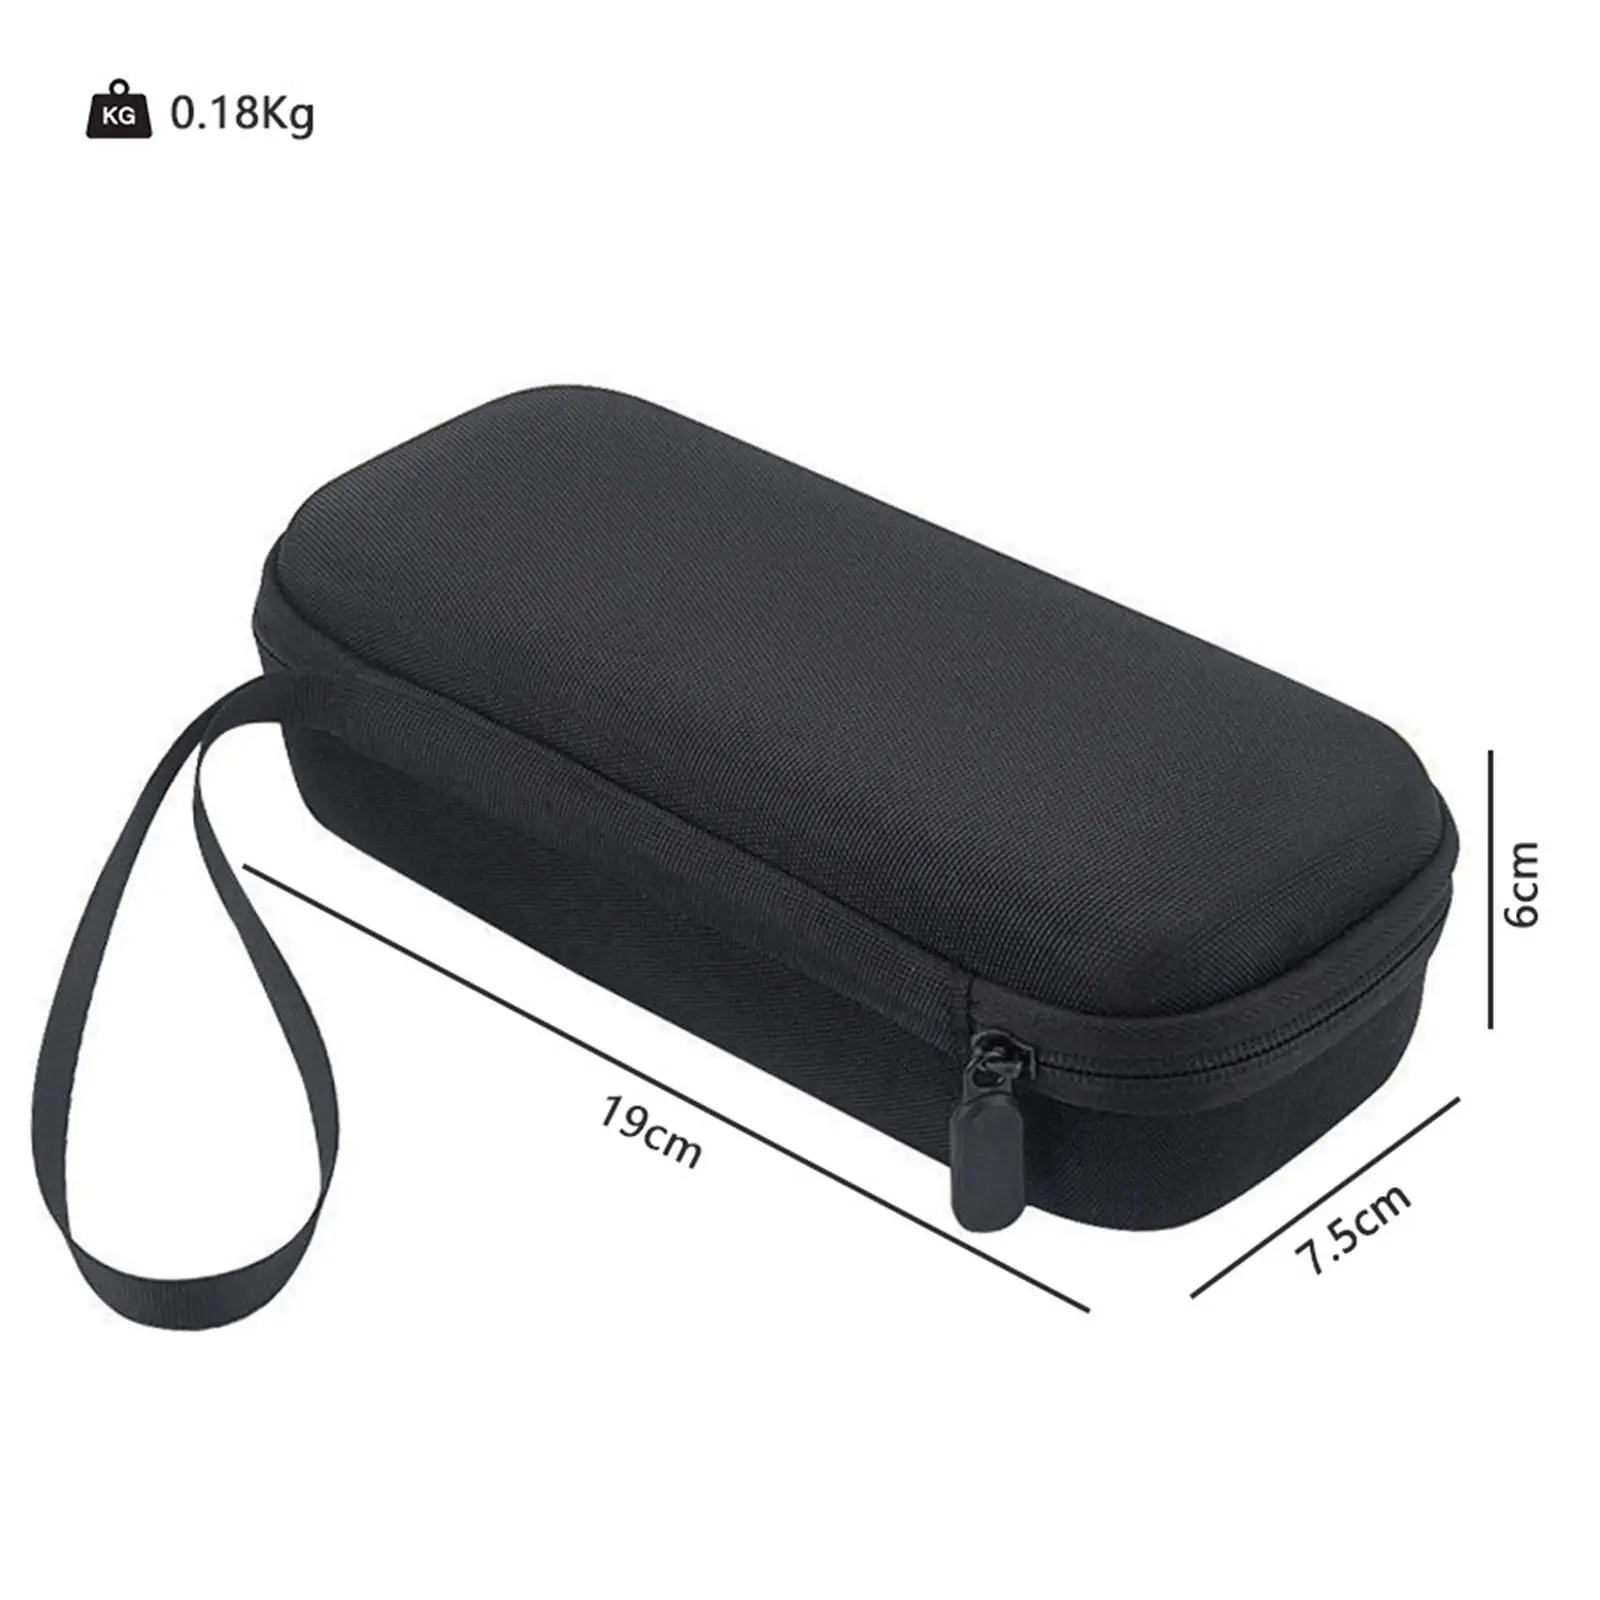 Taşıma Çantaları sert asetat çanta Siyah Darbeye Dayanıklı Toz Geçirmez koruyucu kapaklar için 1S Araba şişirme pompası Hoparlör Seyahat